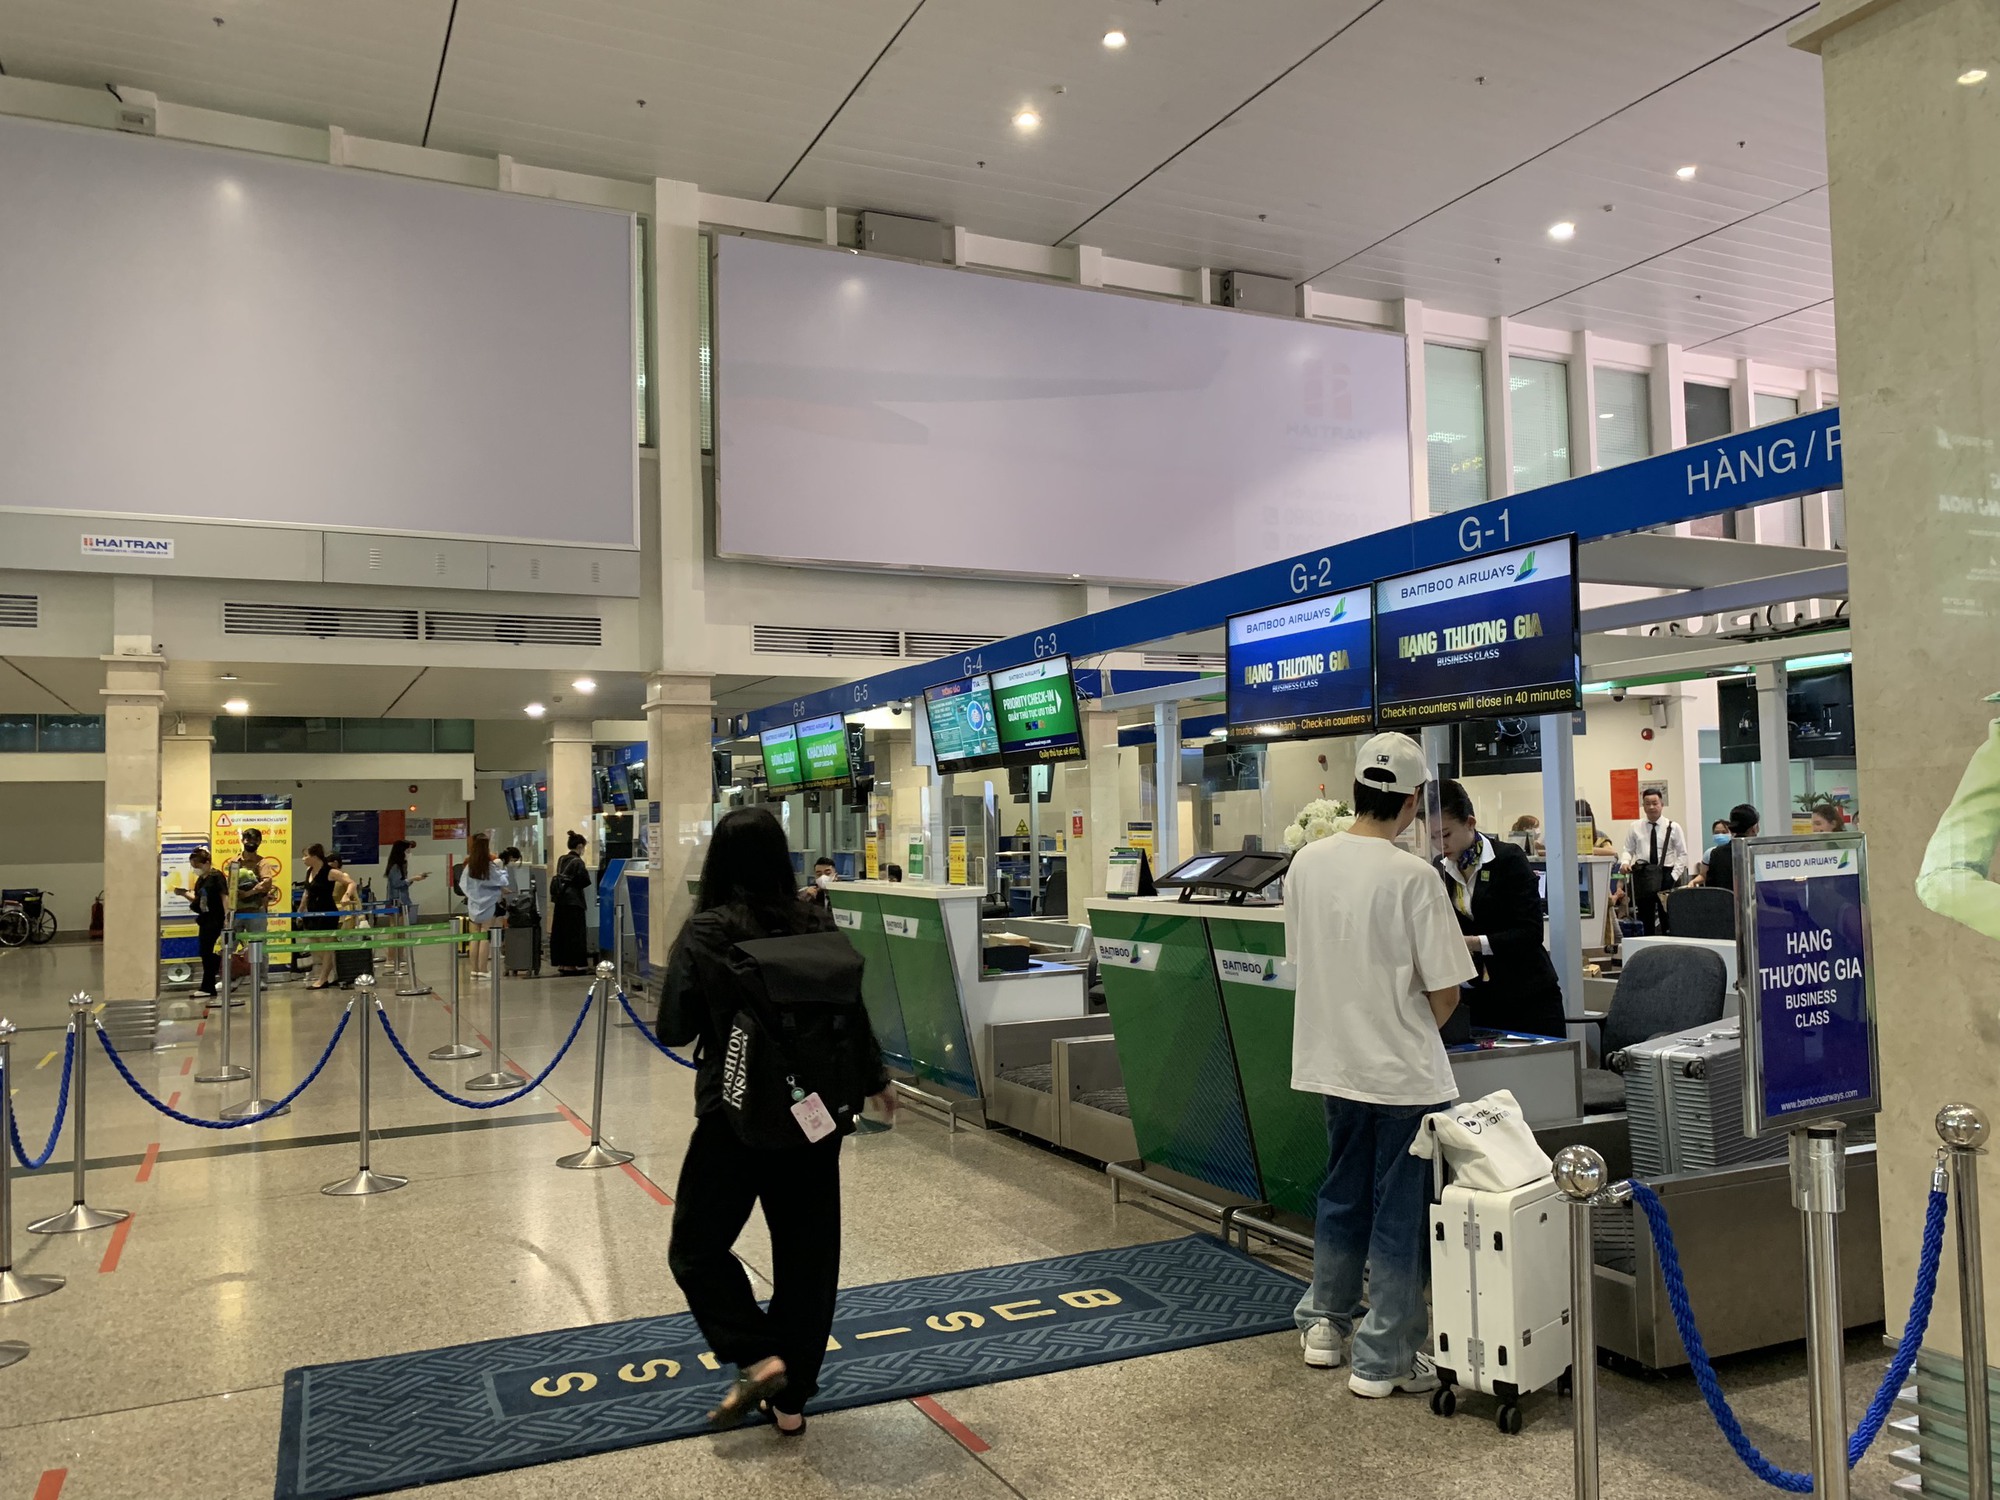 Lượng khách đổ về sân bay Tân Sơn Nhất giảm mạnh trong ngày 2/9 - Ảnh 1.